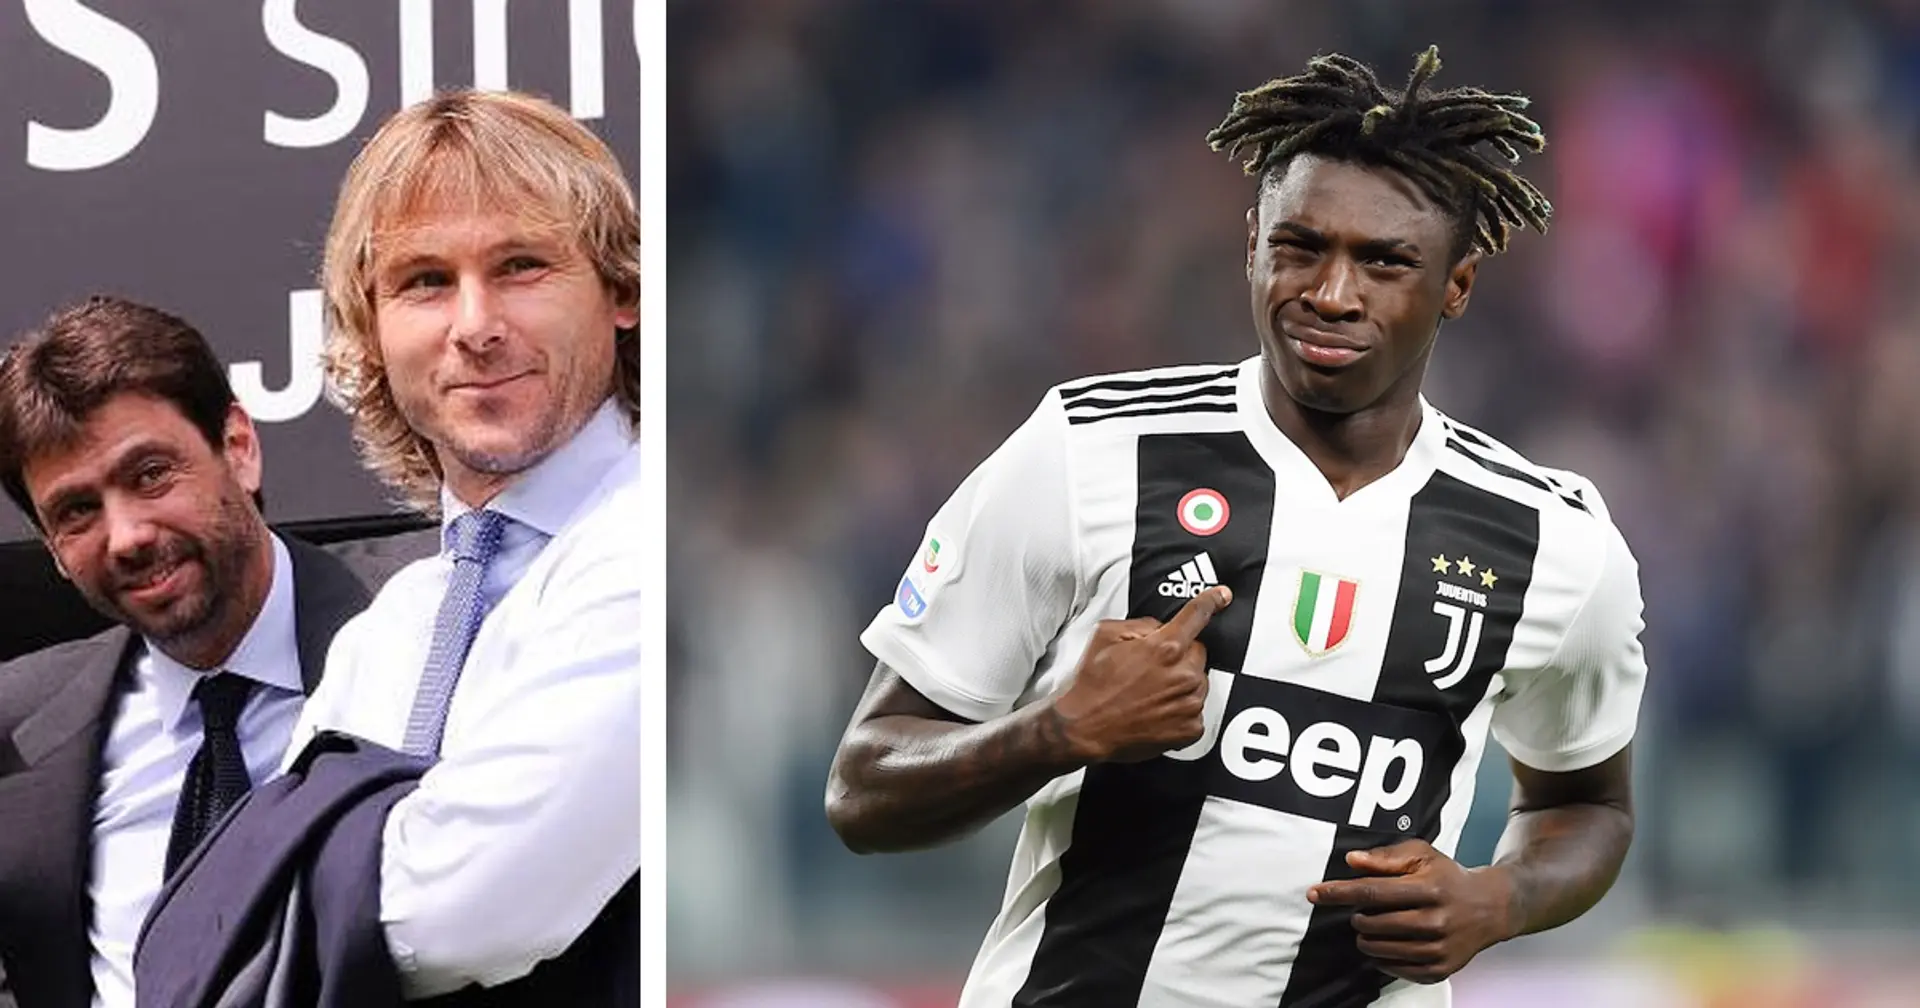 "Sono felici con l'arrivo di Kean": Fabrizio Romano anticipa le ultime mosse di mercato della Juventus